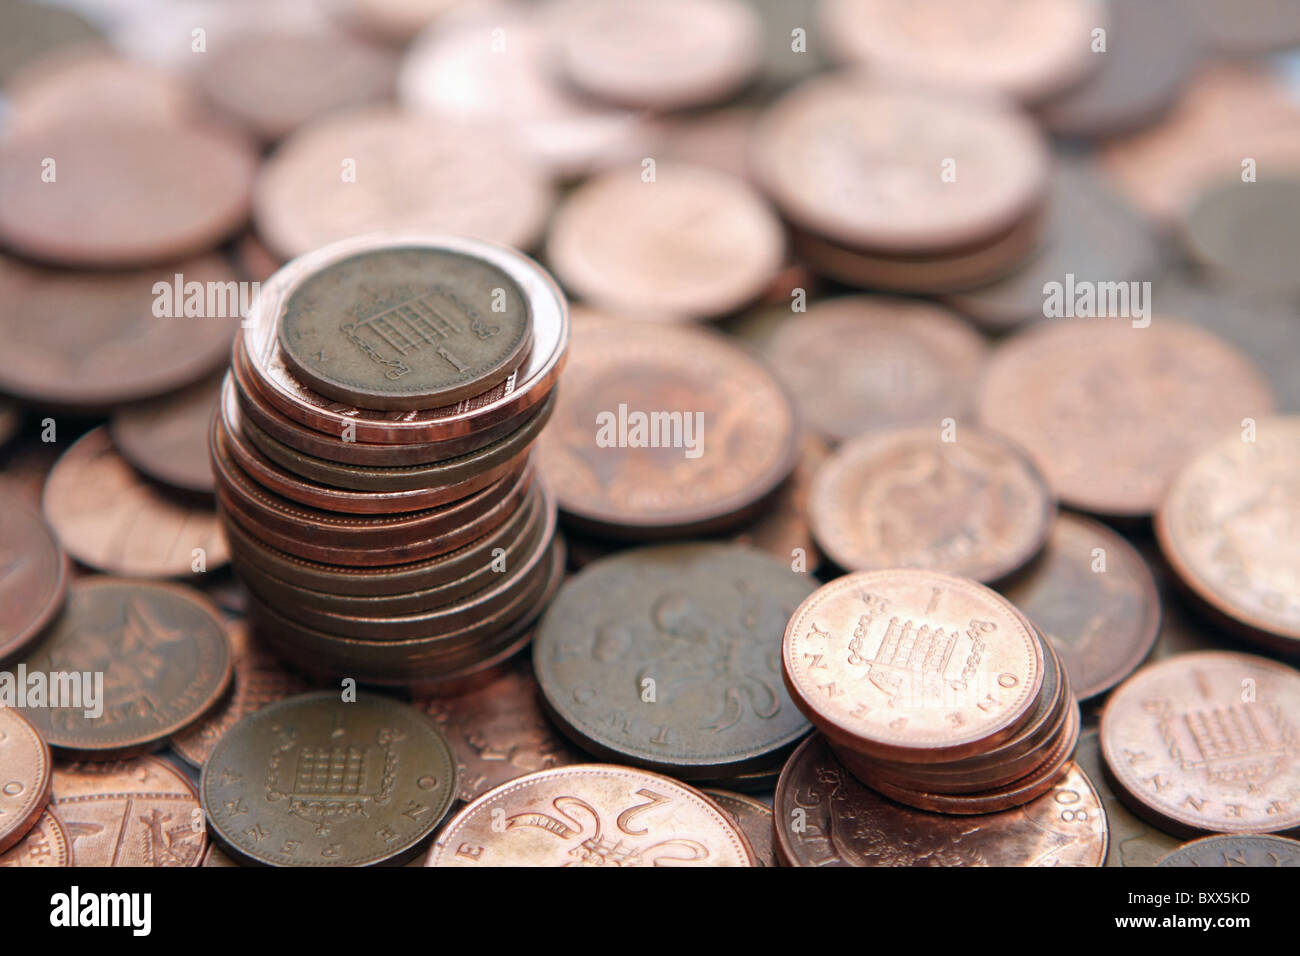 ein Sterling 1 p auf einen Stapel von 2P Münzen und einen kleinen Stapel von 1-p-Münzen - alle stehen auf einem Durcheinander von 2p und 1-p-Münzen zu prägen Stockfoto